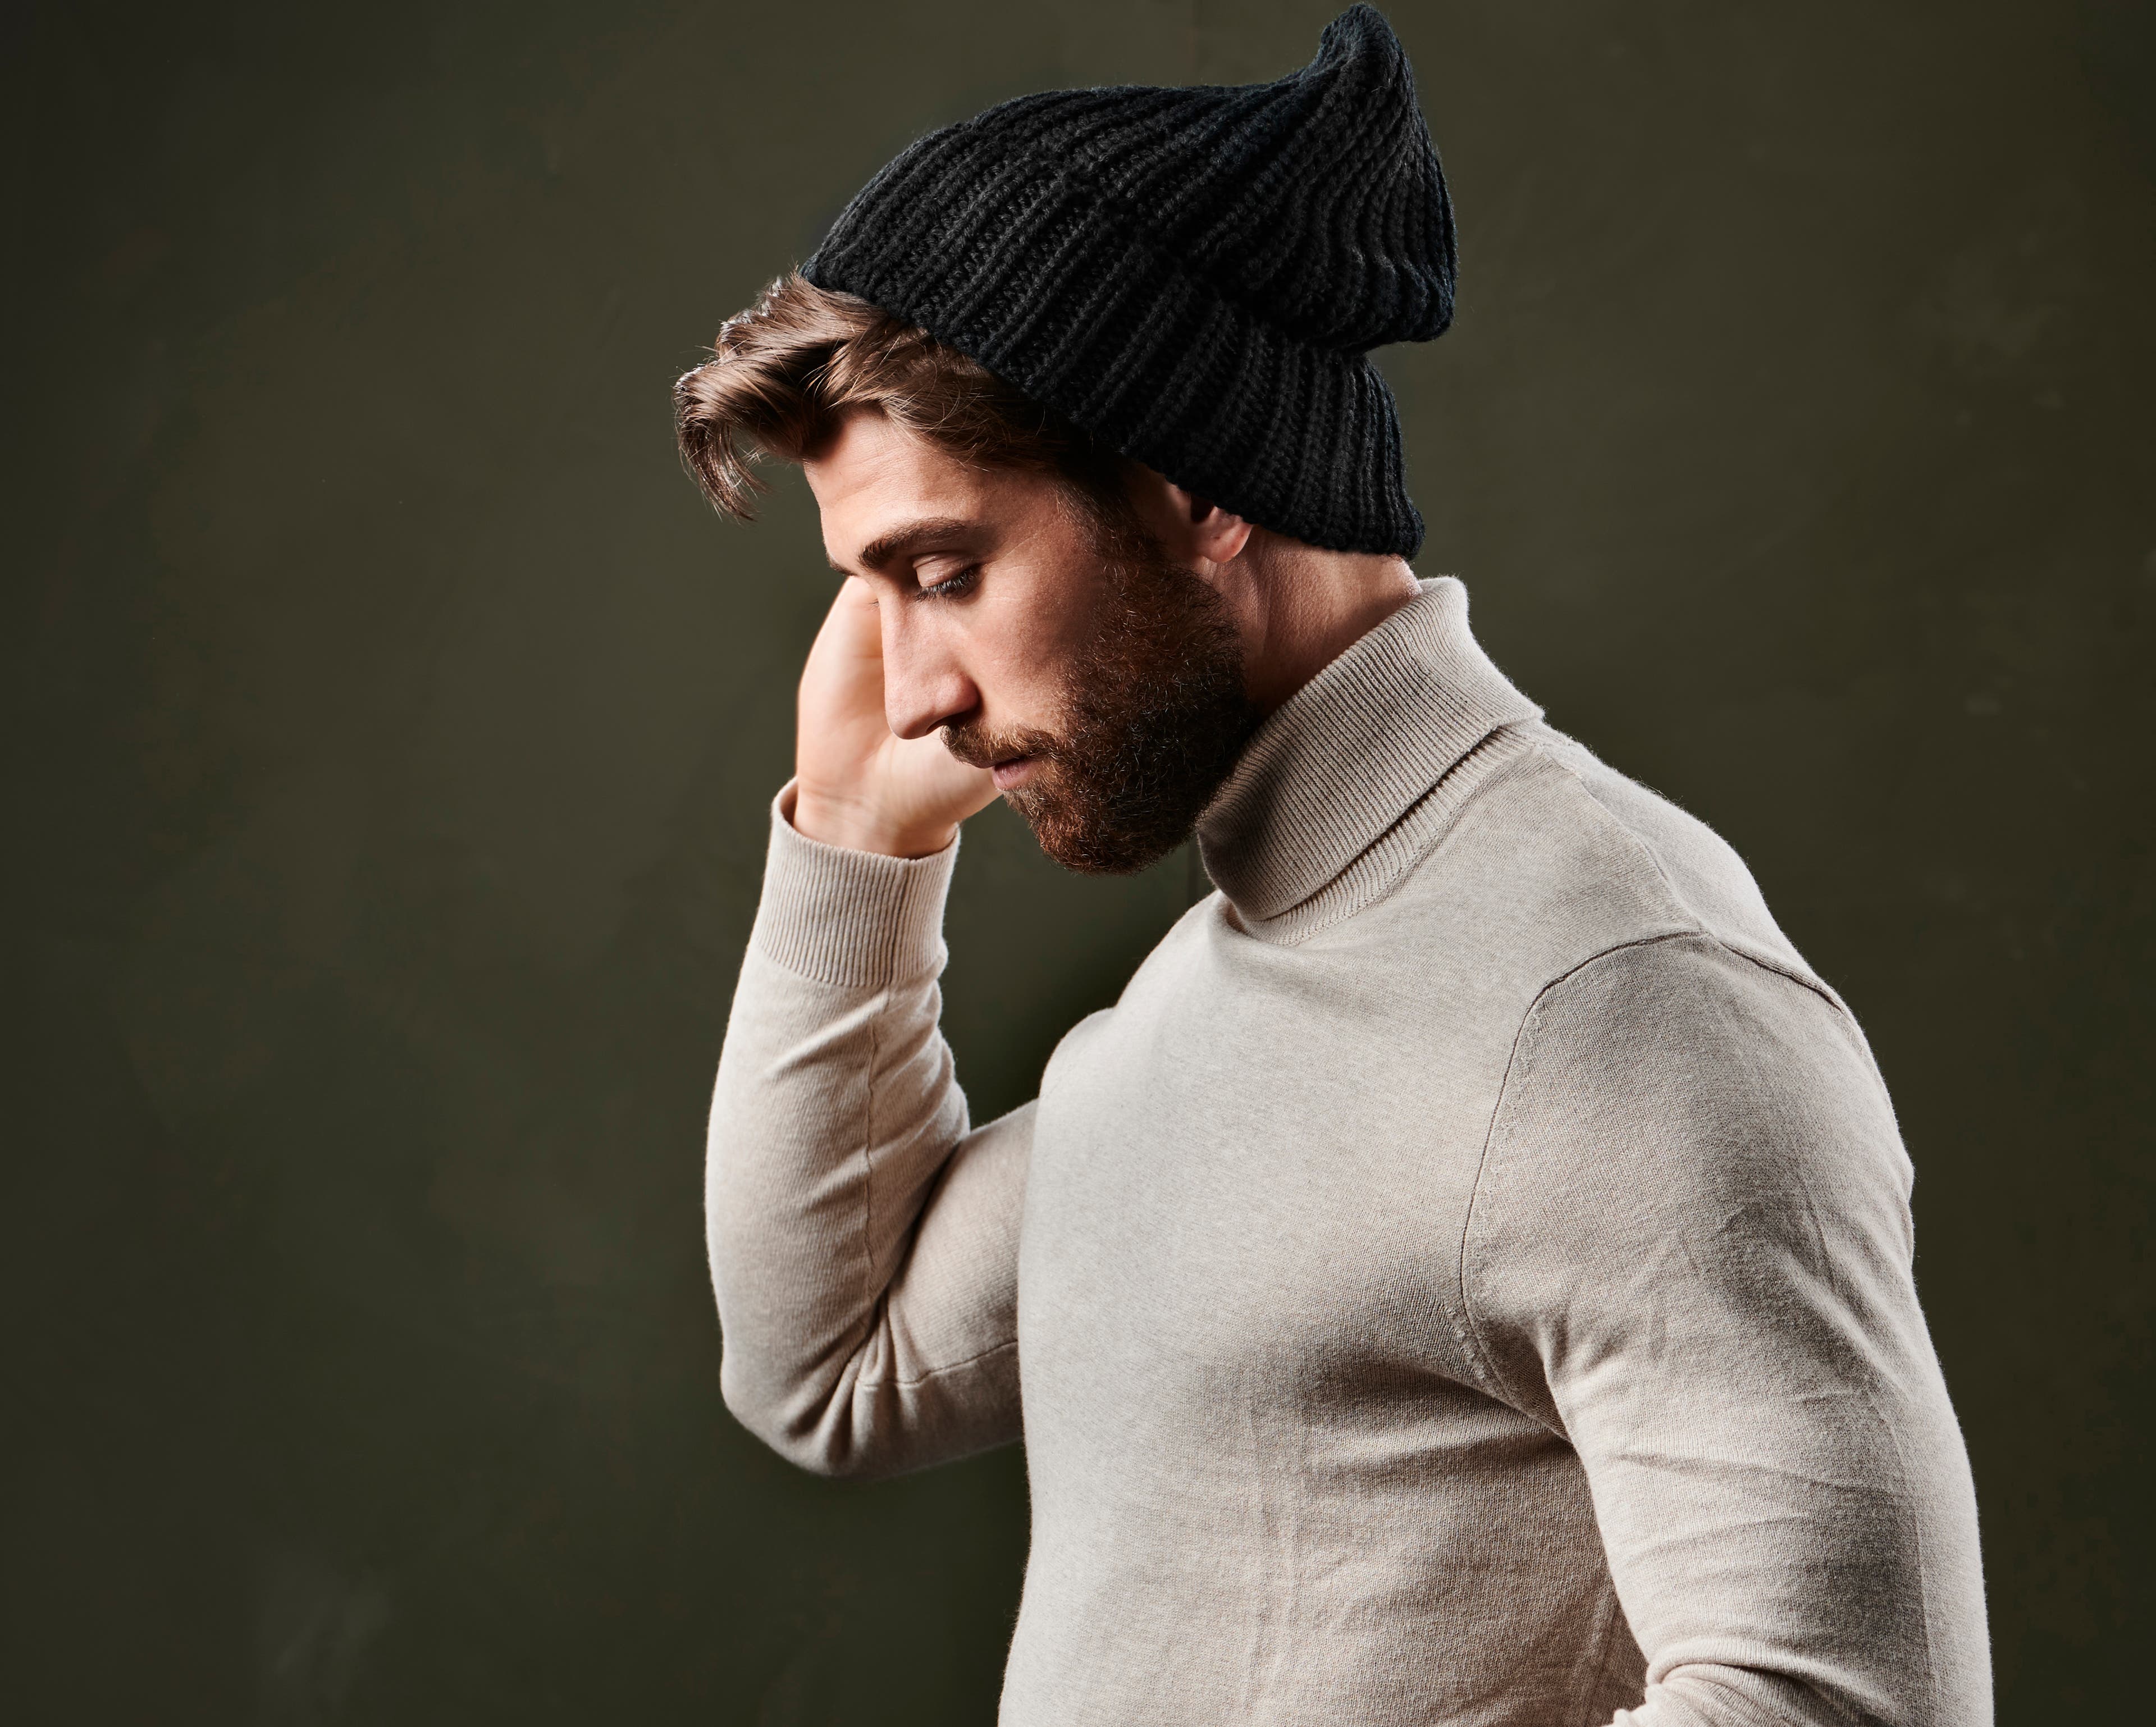 Comment porter votre bonnet : le guide ultime pour hommes